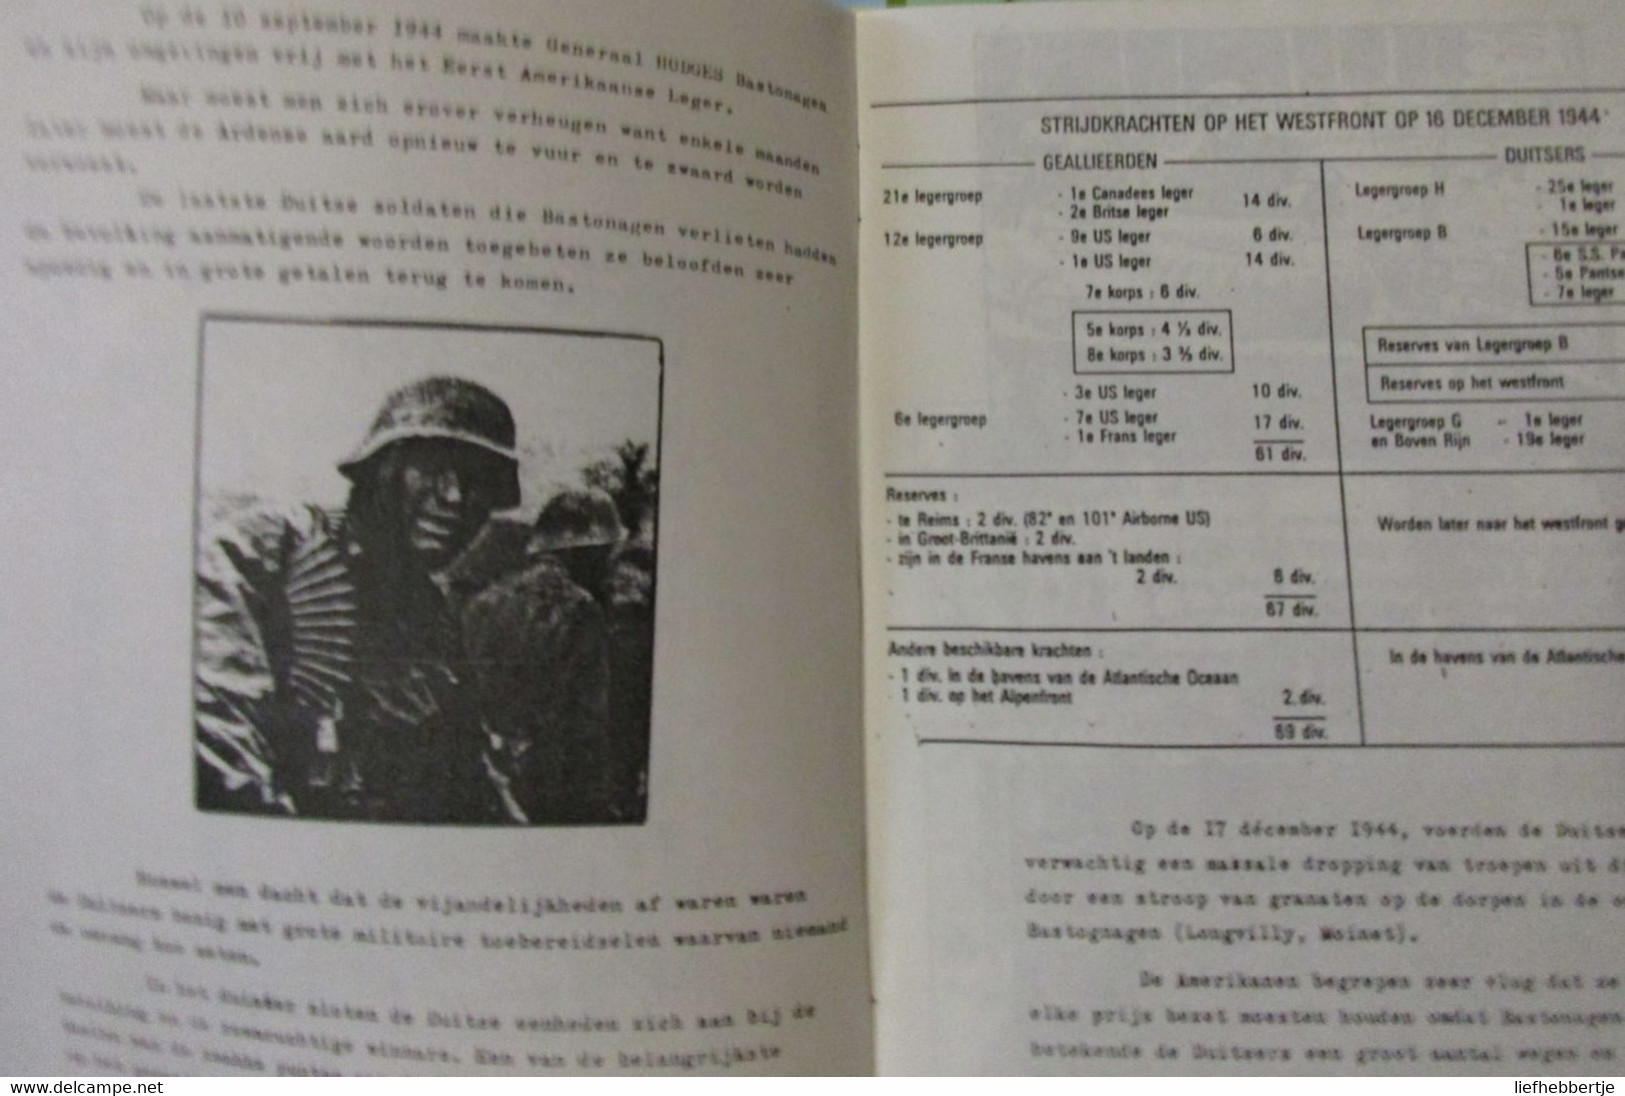 De Slag Van Bastogne - Decembre 1944 - Guerre 1939-45